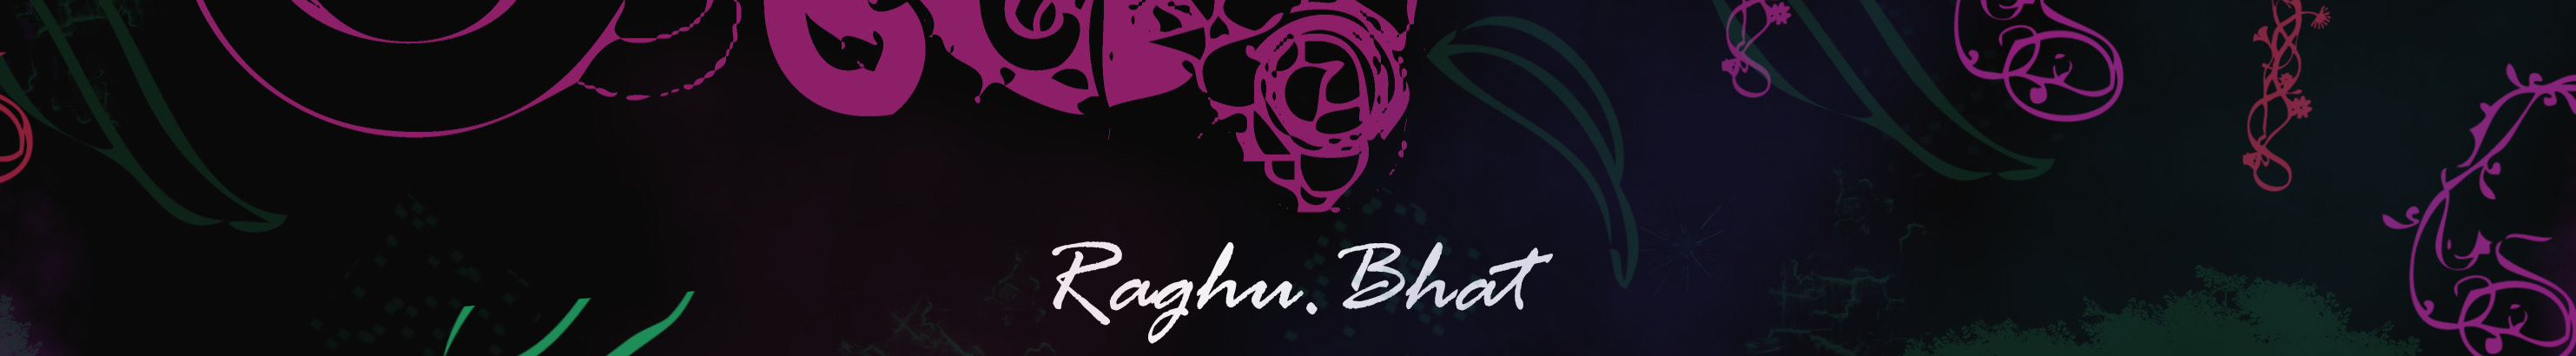 Profilbanneret til Raghu Bhat